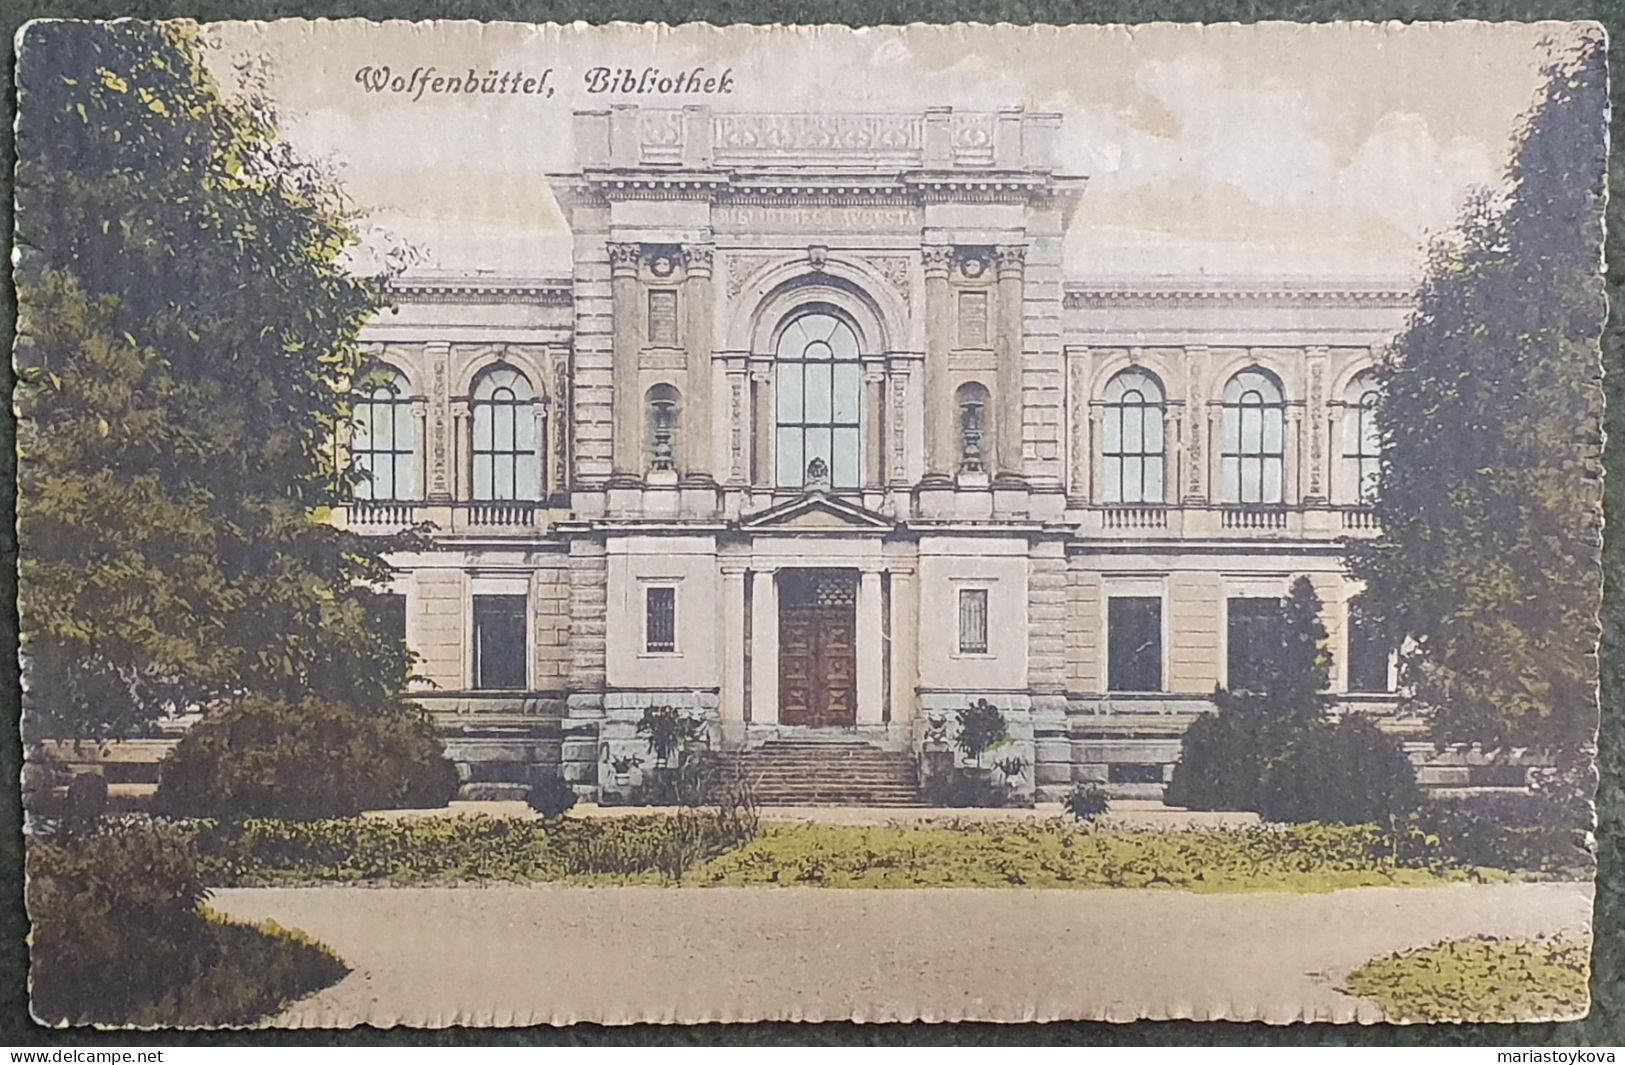 1929. Wolfenbüffel. Bibliothek. - Wolfenbüttel